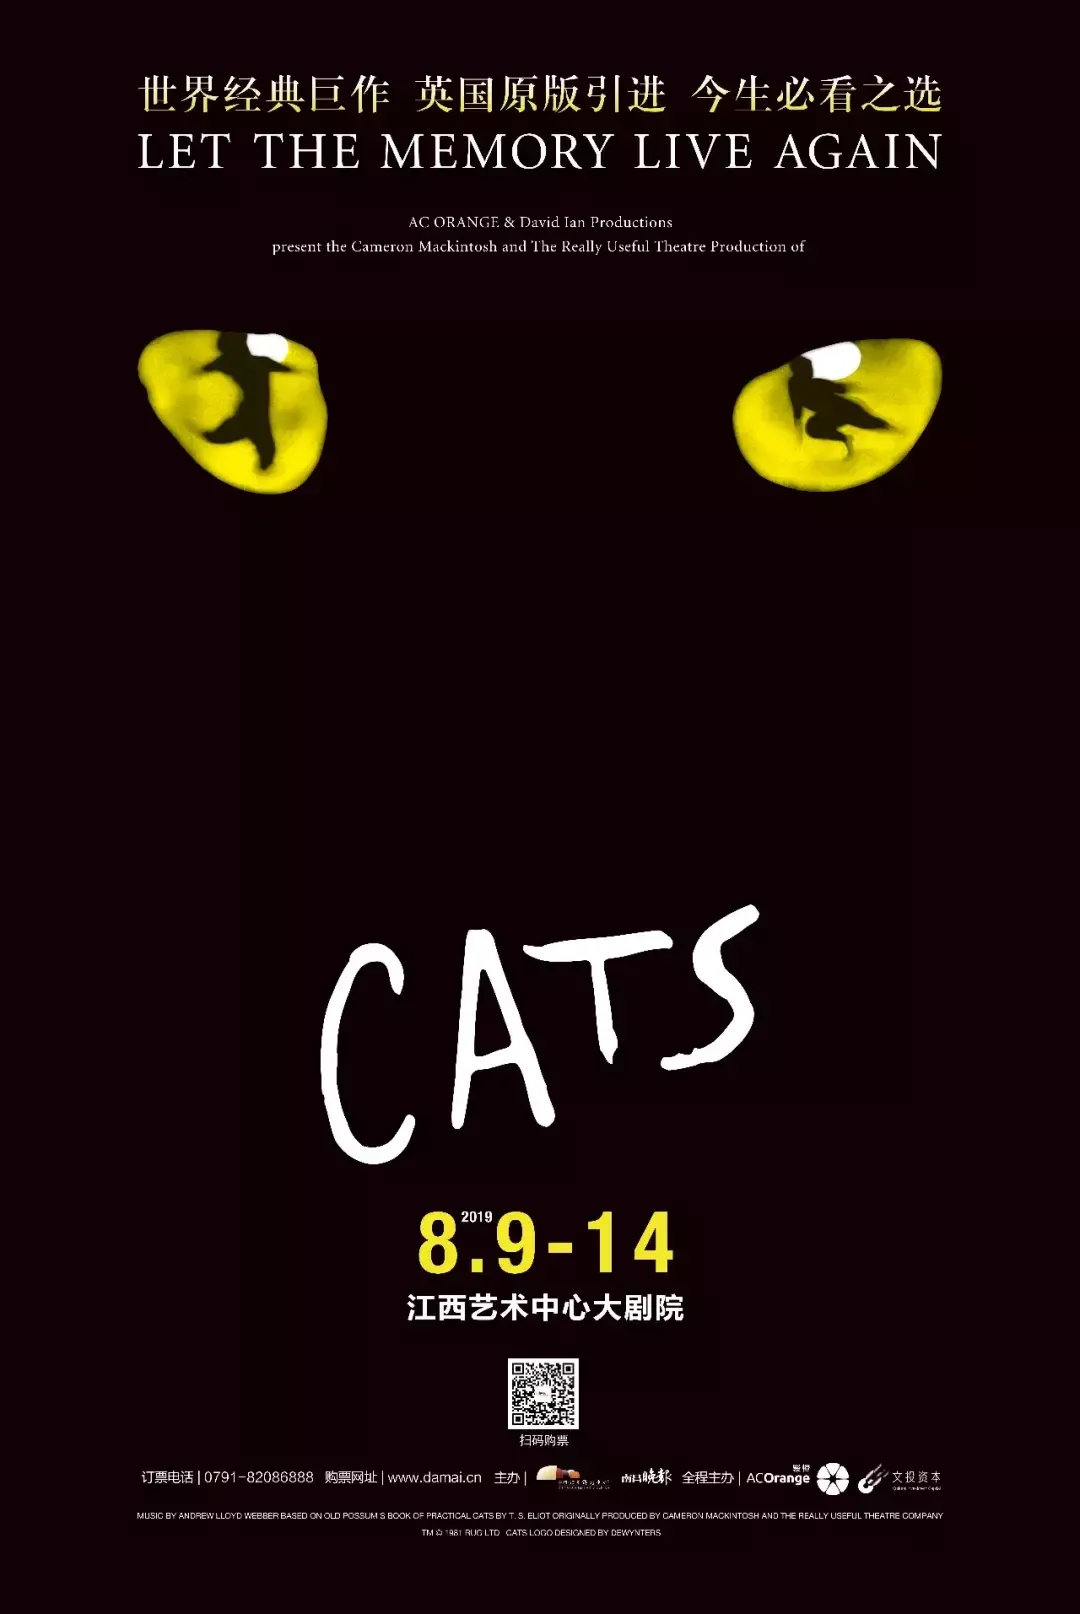 猫的音乐剧|世界经典原版音乐剧《猫》CATS